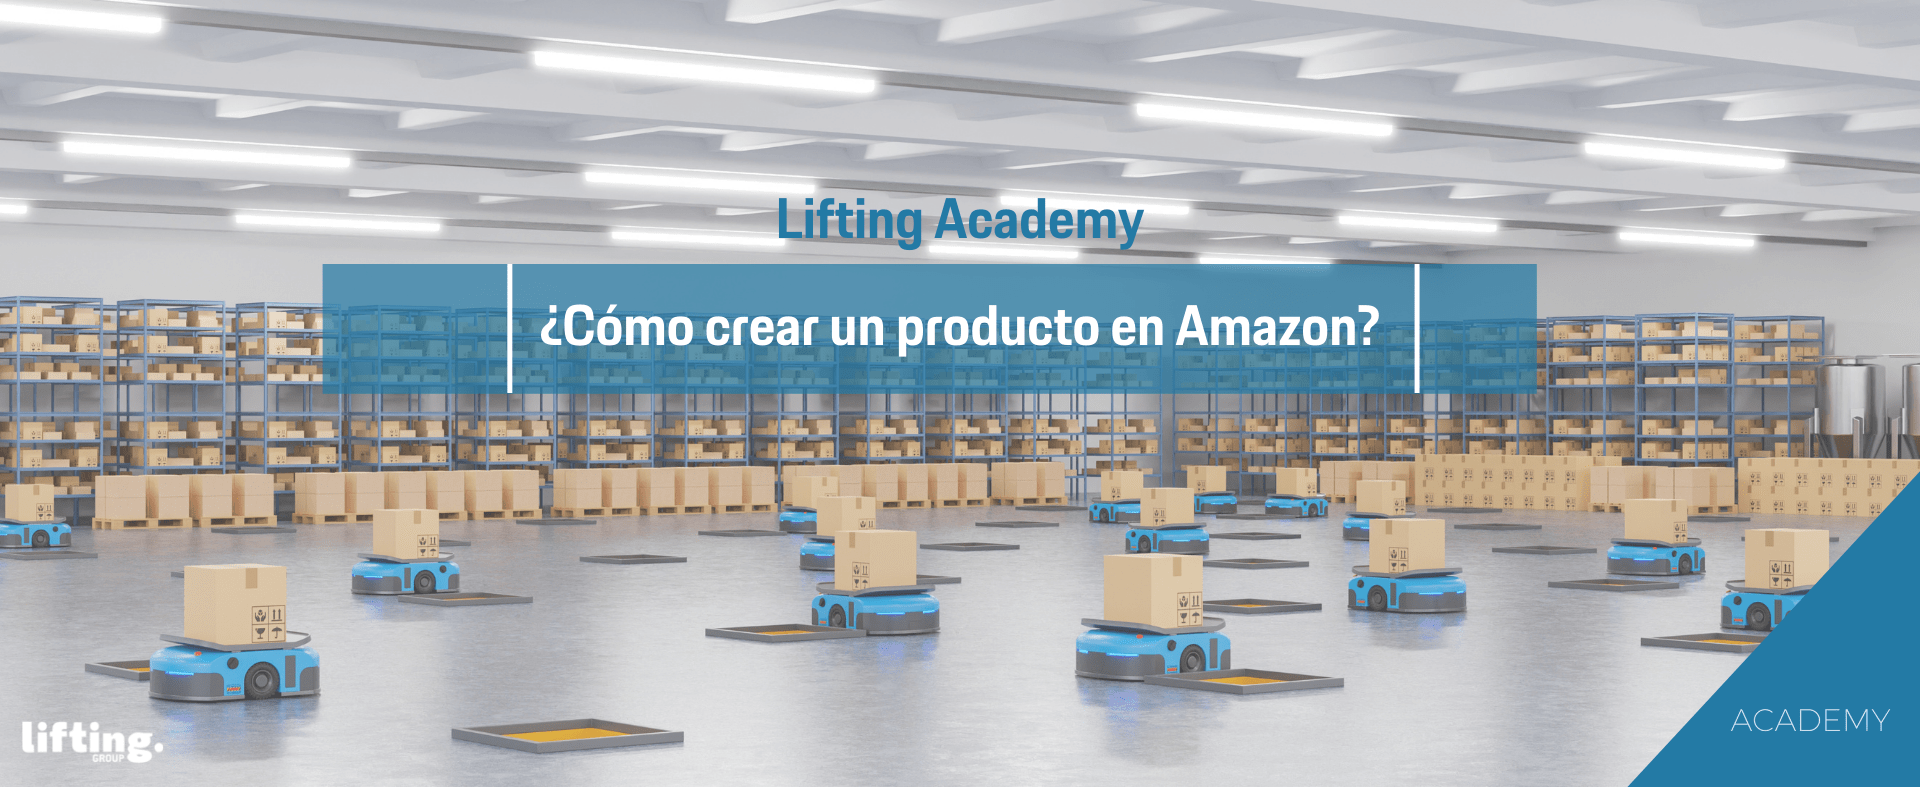 Lifting Academy: ¿Cómo crear un producto en Amazon?